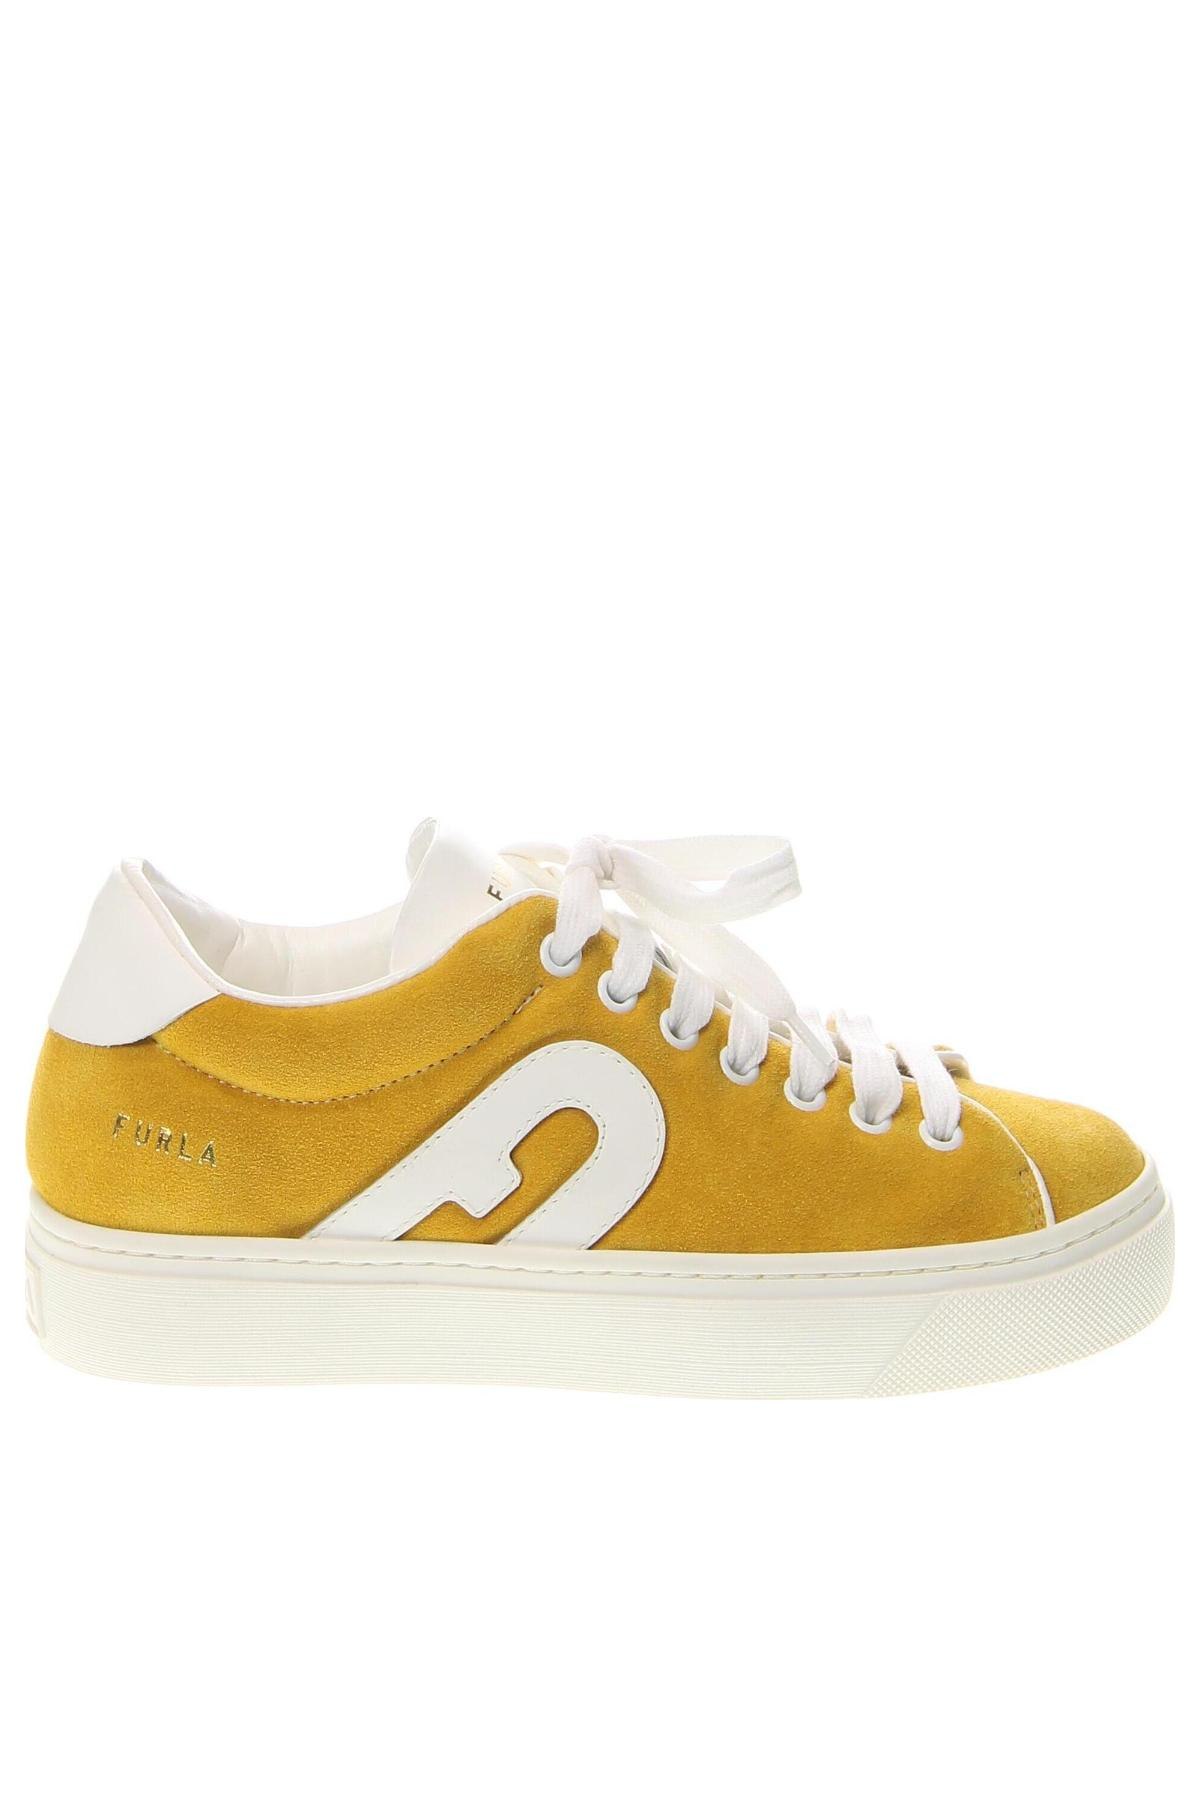 Γυναικεία παπούτσια Furla, Μέγεθος 36, Χρώμα Κίτρινο, Τιμή 200,00 €